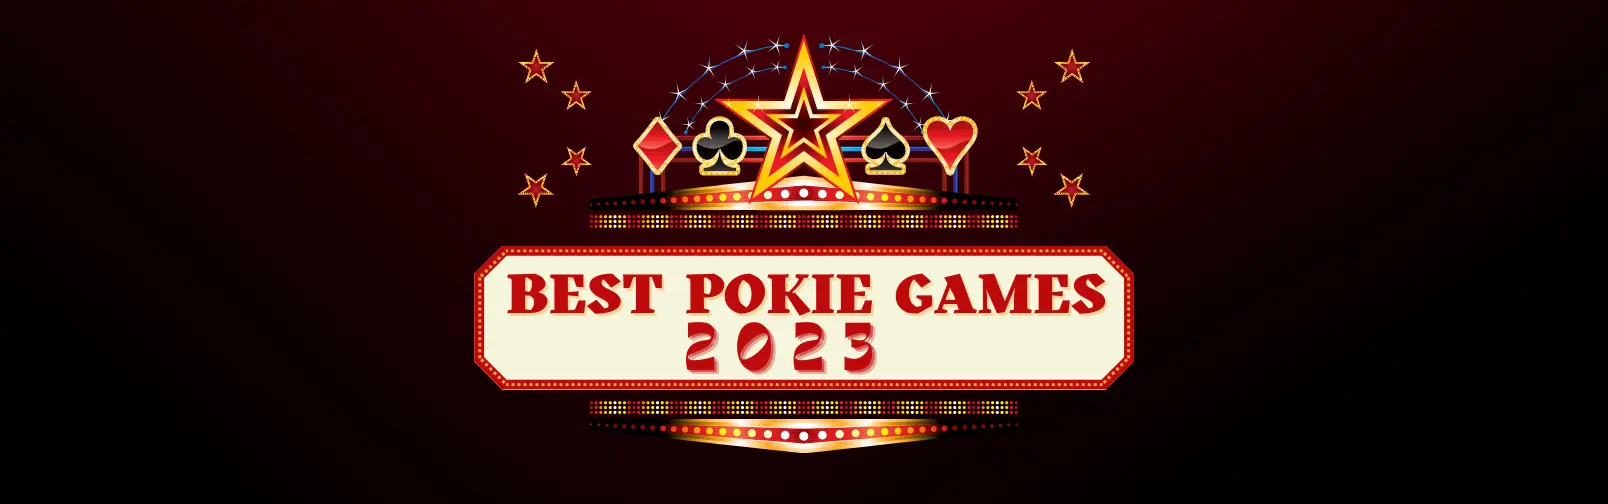 best pokie games NZ 2023